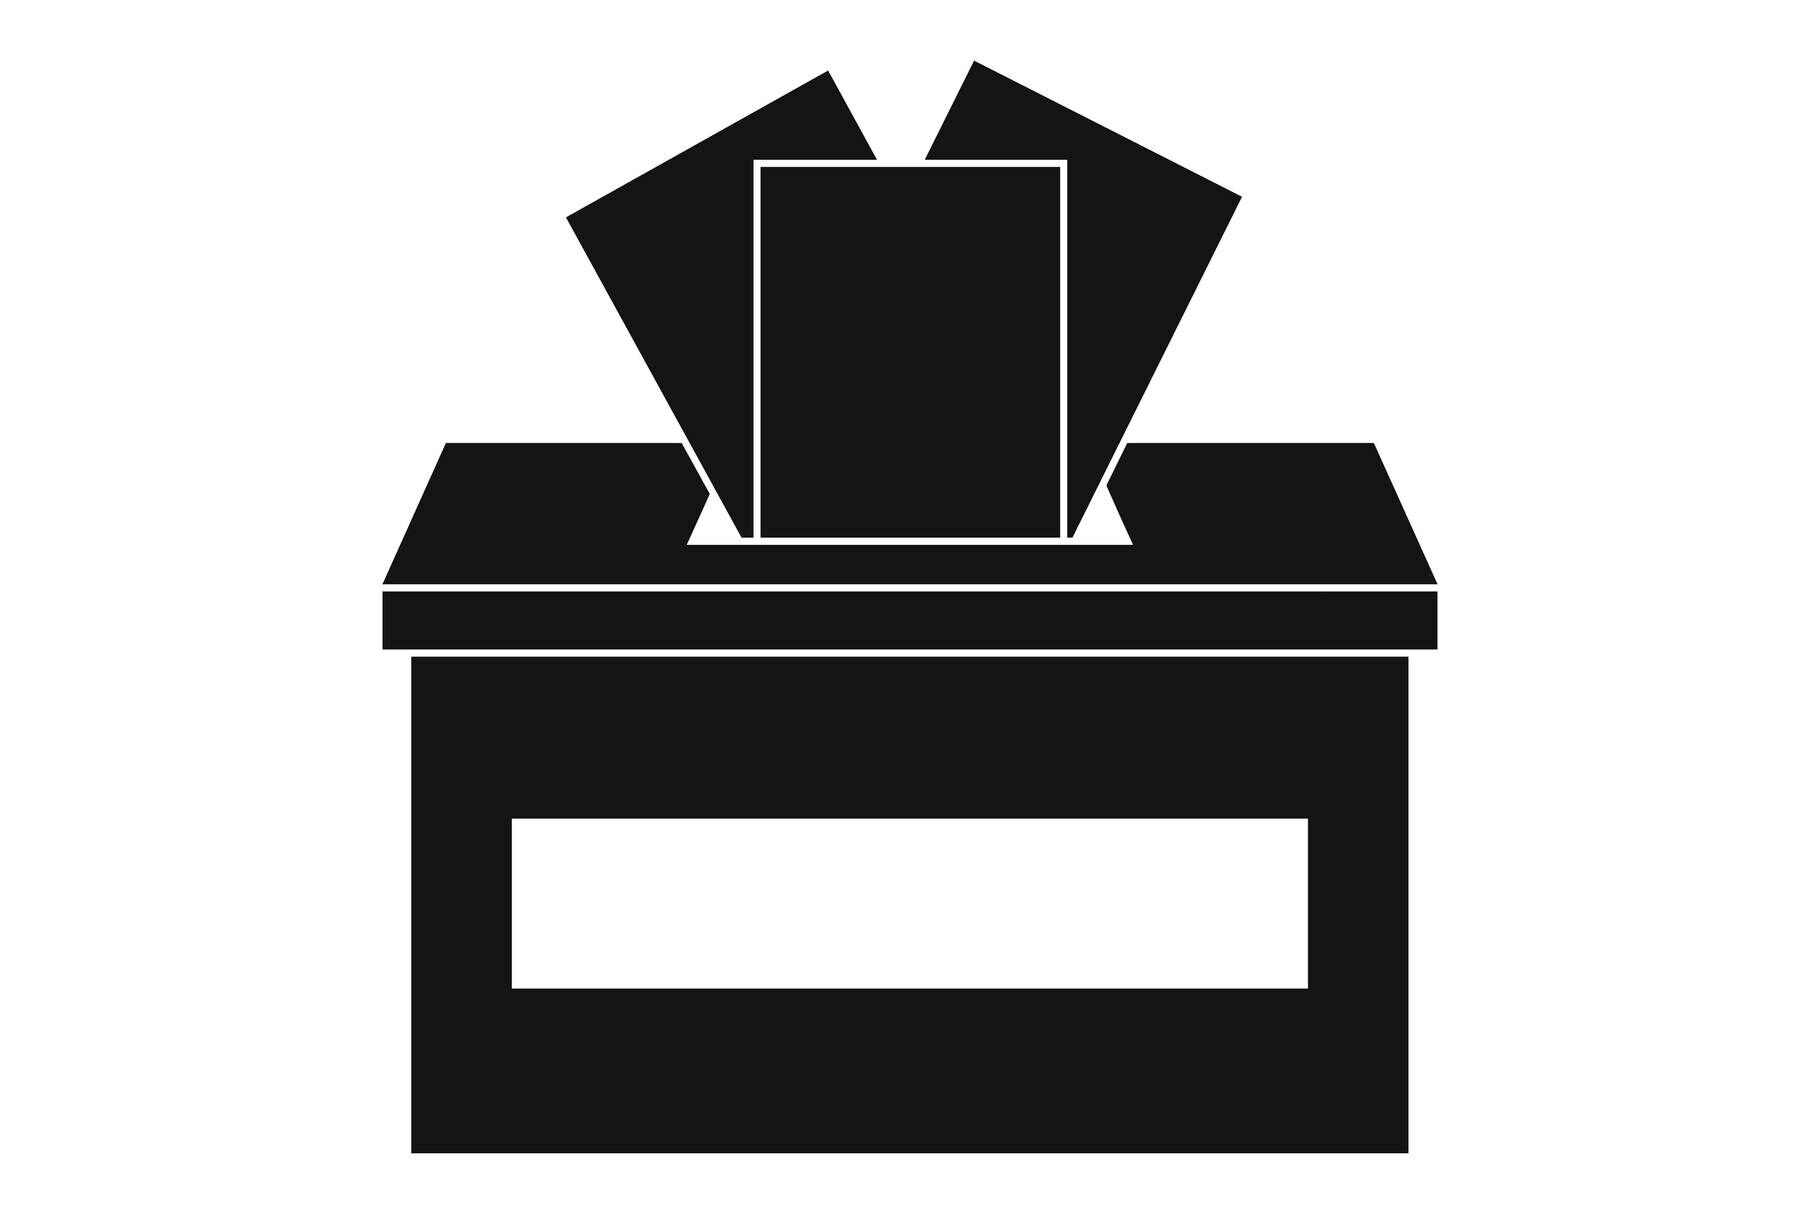 ballot box icon